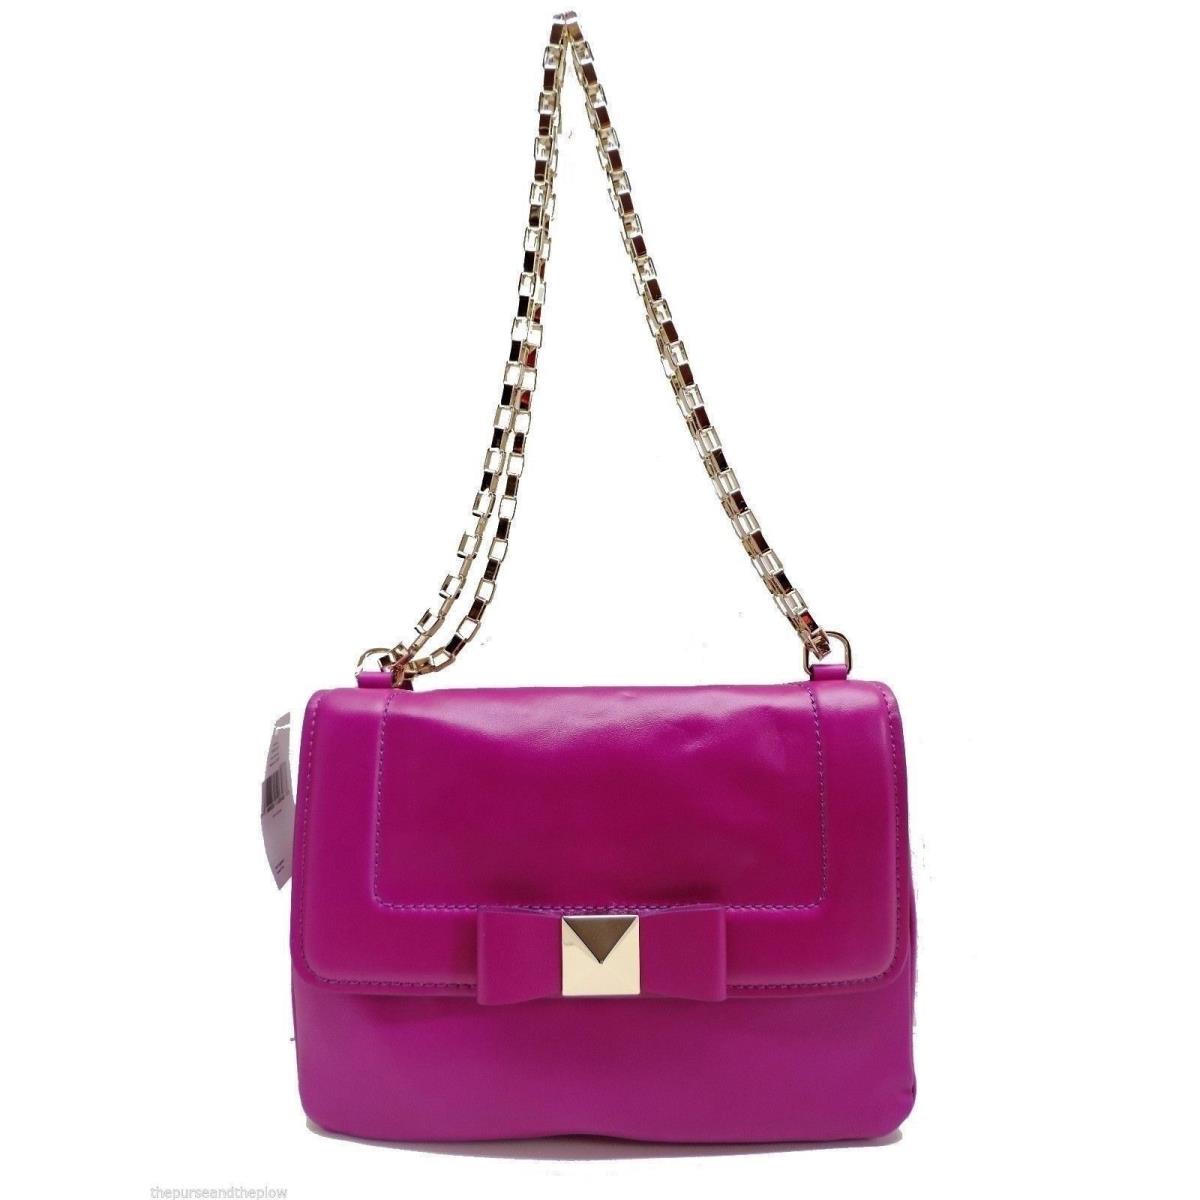 Kate Spade New York Justine Shoulder Bag Handbag Pink Leather New